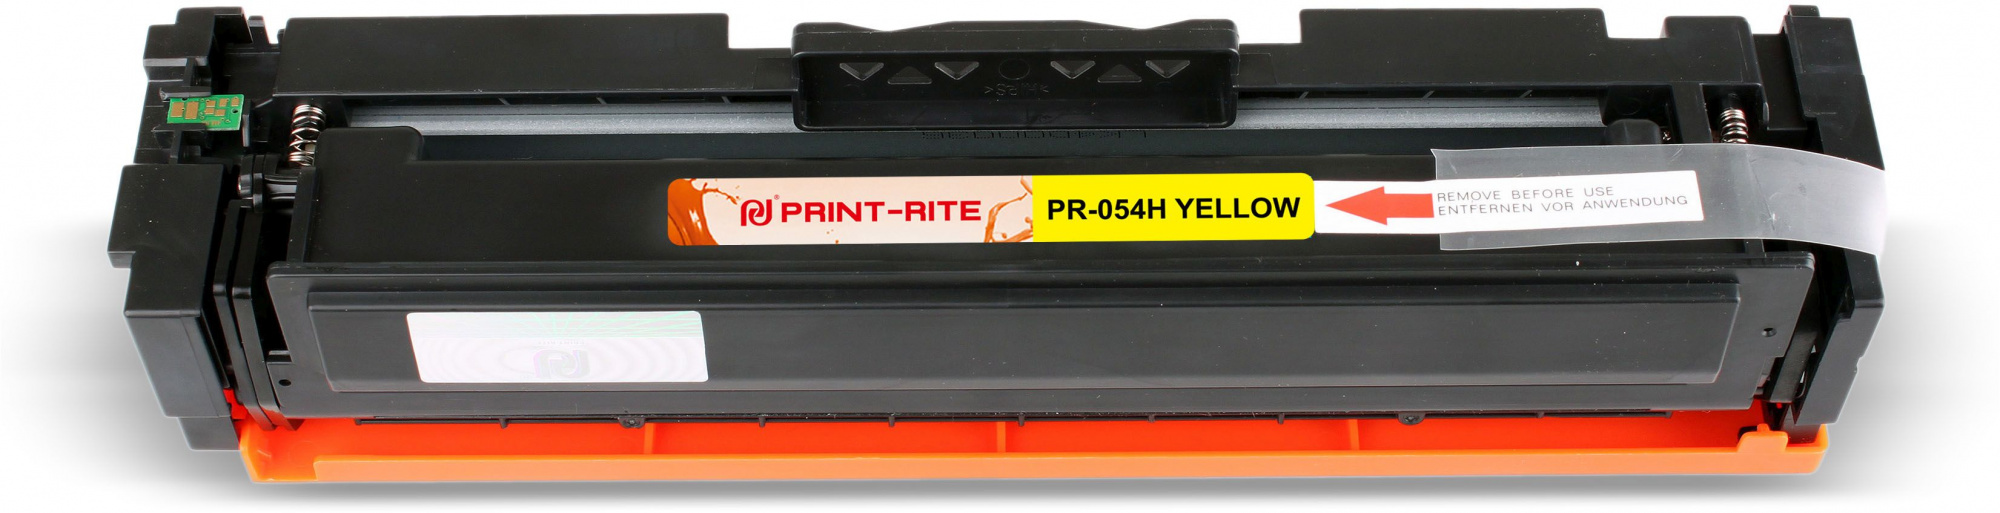   Print-Rite TFCA08YPU1J PR-054H YELLOW 054H Yellow  (2300.)  Canon LBP 621Cw/623Cdw/641Cw/643Cdw